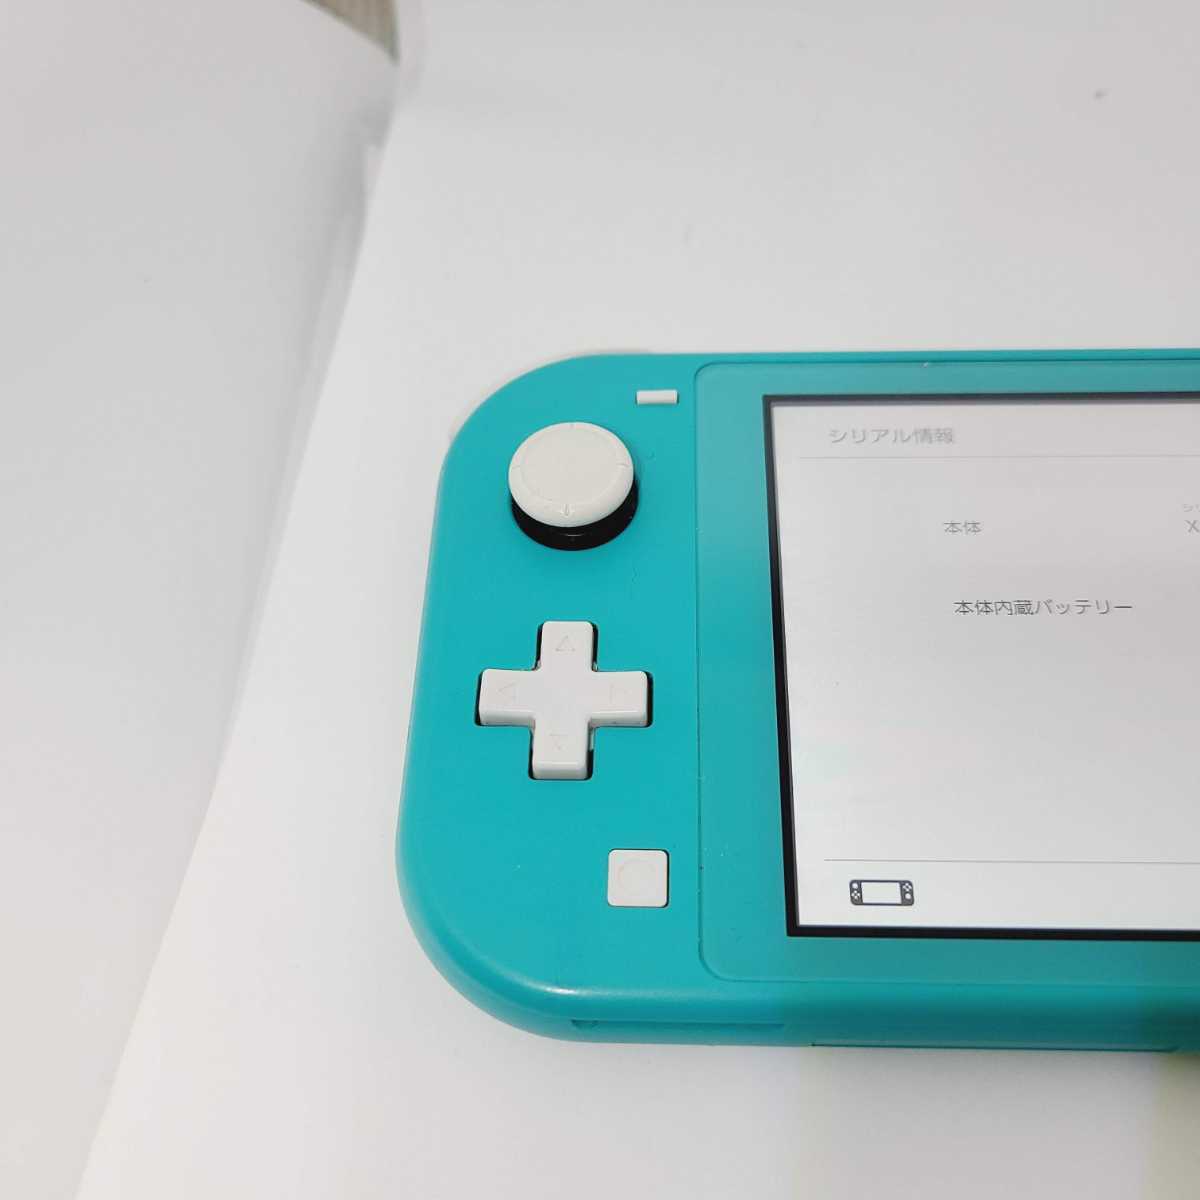 【中古美品】 Nintendo Switch Lite 任天堂 スイッチライト HDH-001 本体 ターコイズ 動作確認済み スイッチ 即発送